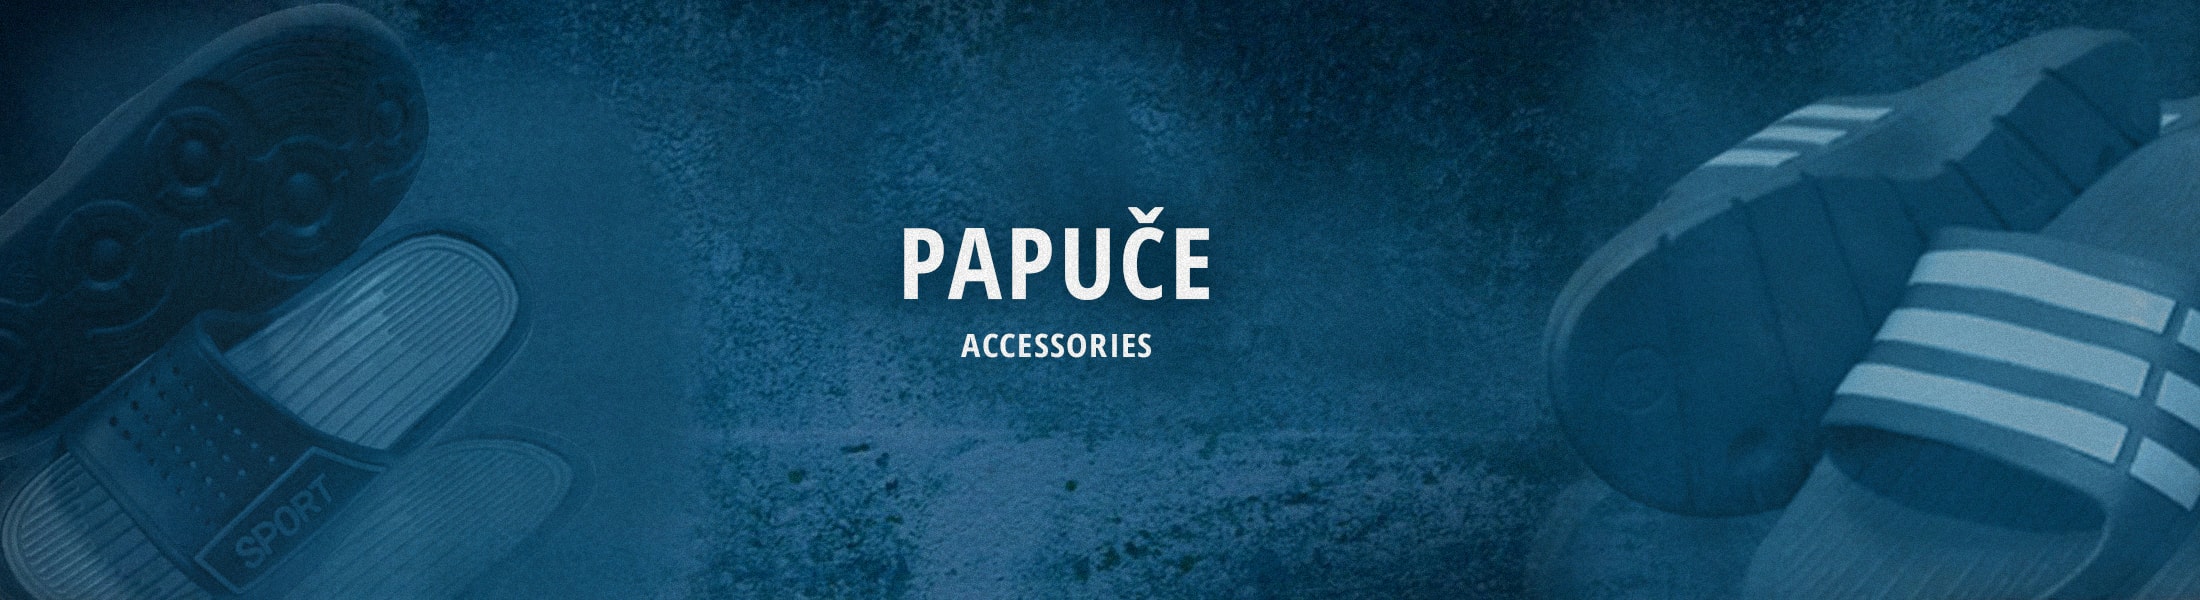 Accessories - Papuče